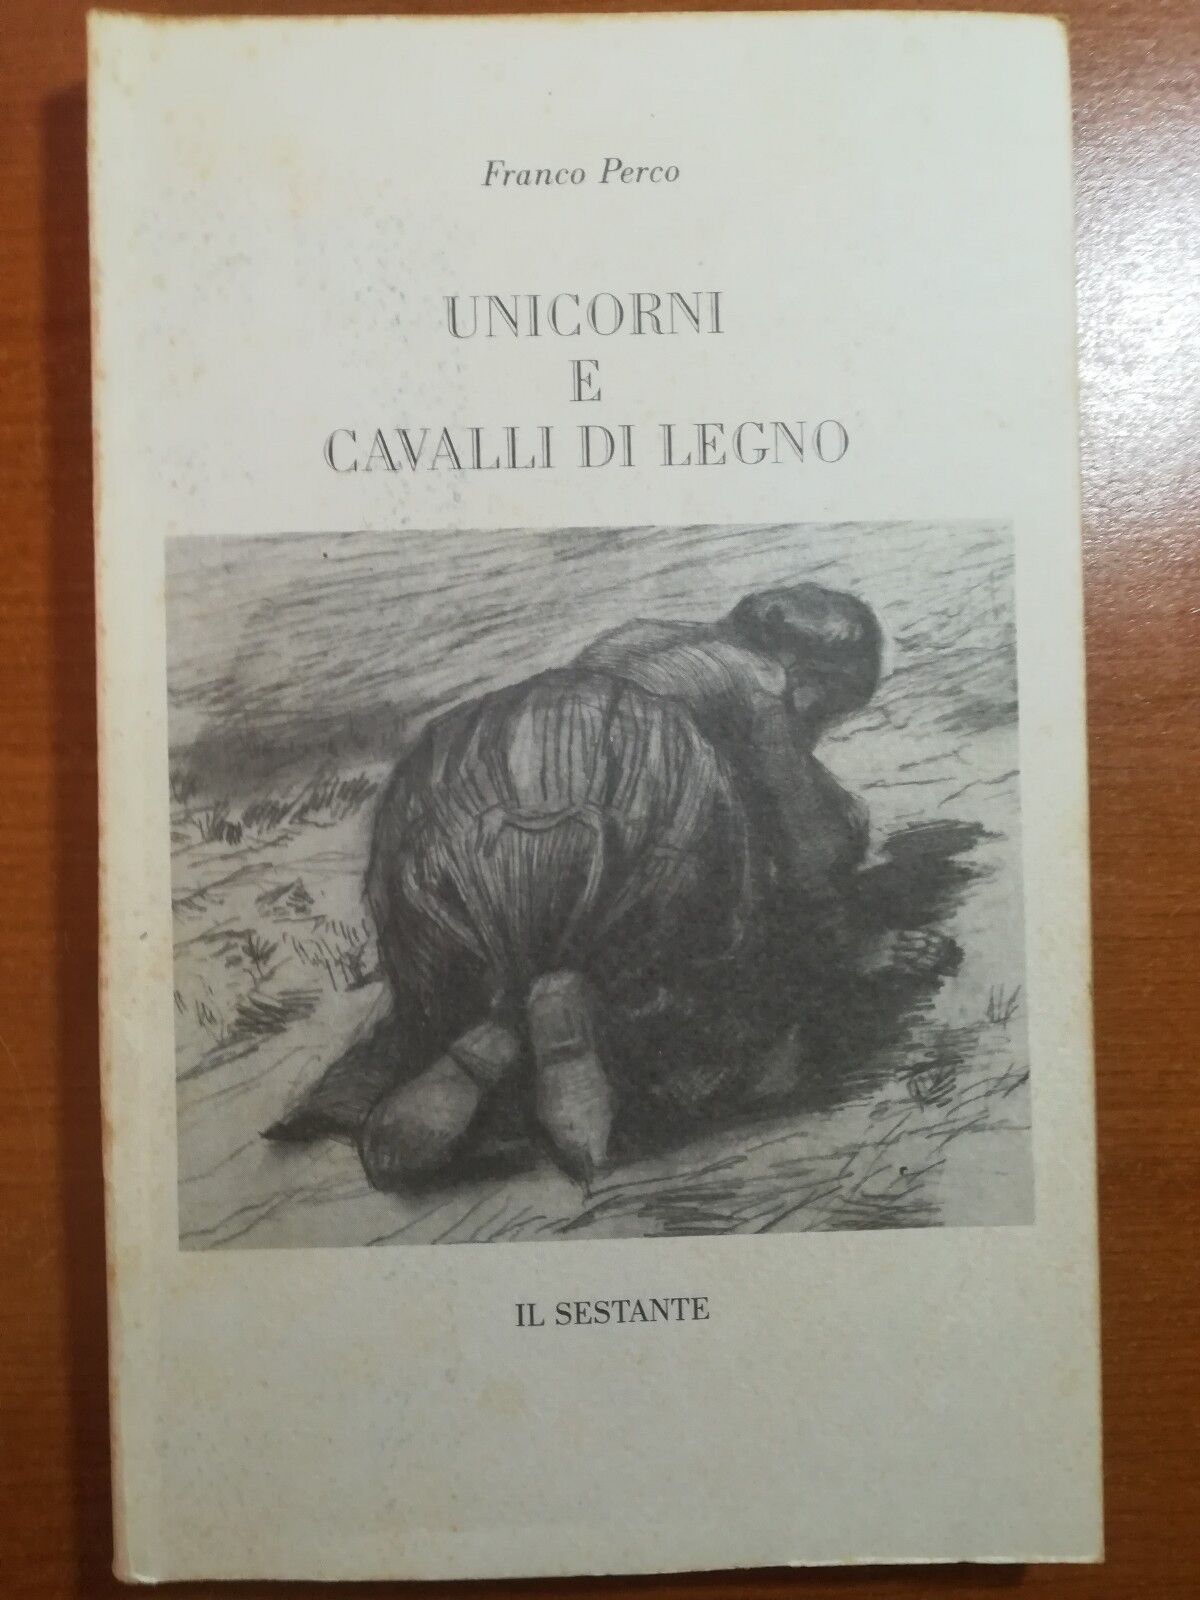 Unicorni e Cavalli di legno - Franco Perco - Il sestante - 1990 - M